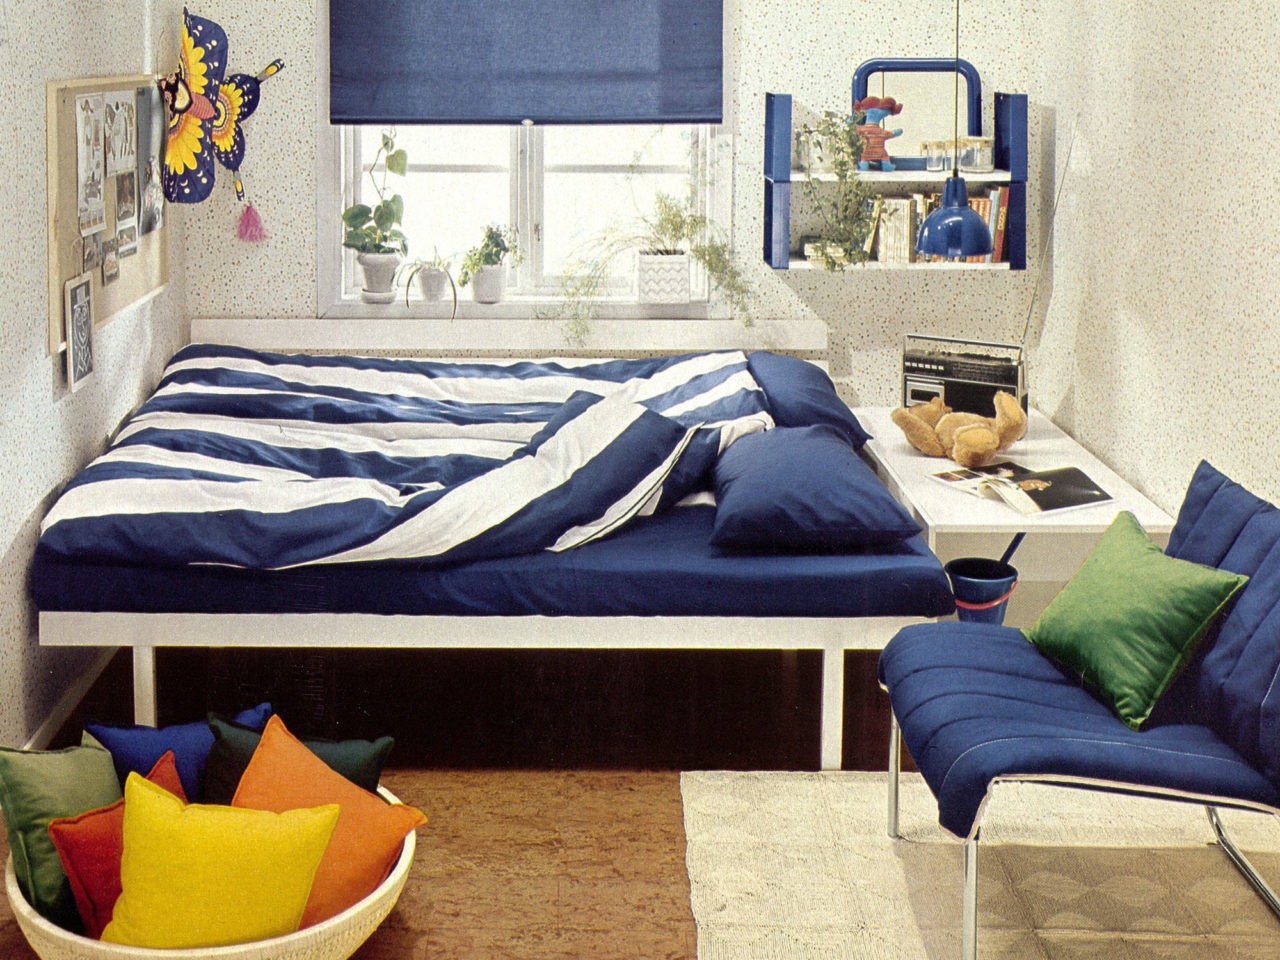 Chambre claire avec tapisserie à pois, sol en liège, linge de lit à rayures bleues et blanches, textiles et détails bleus.